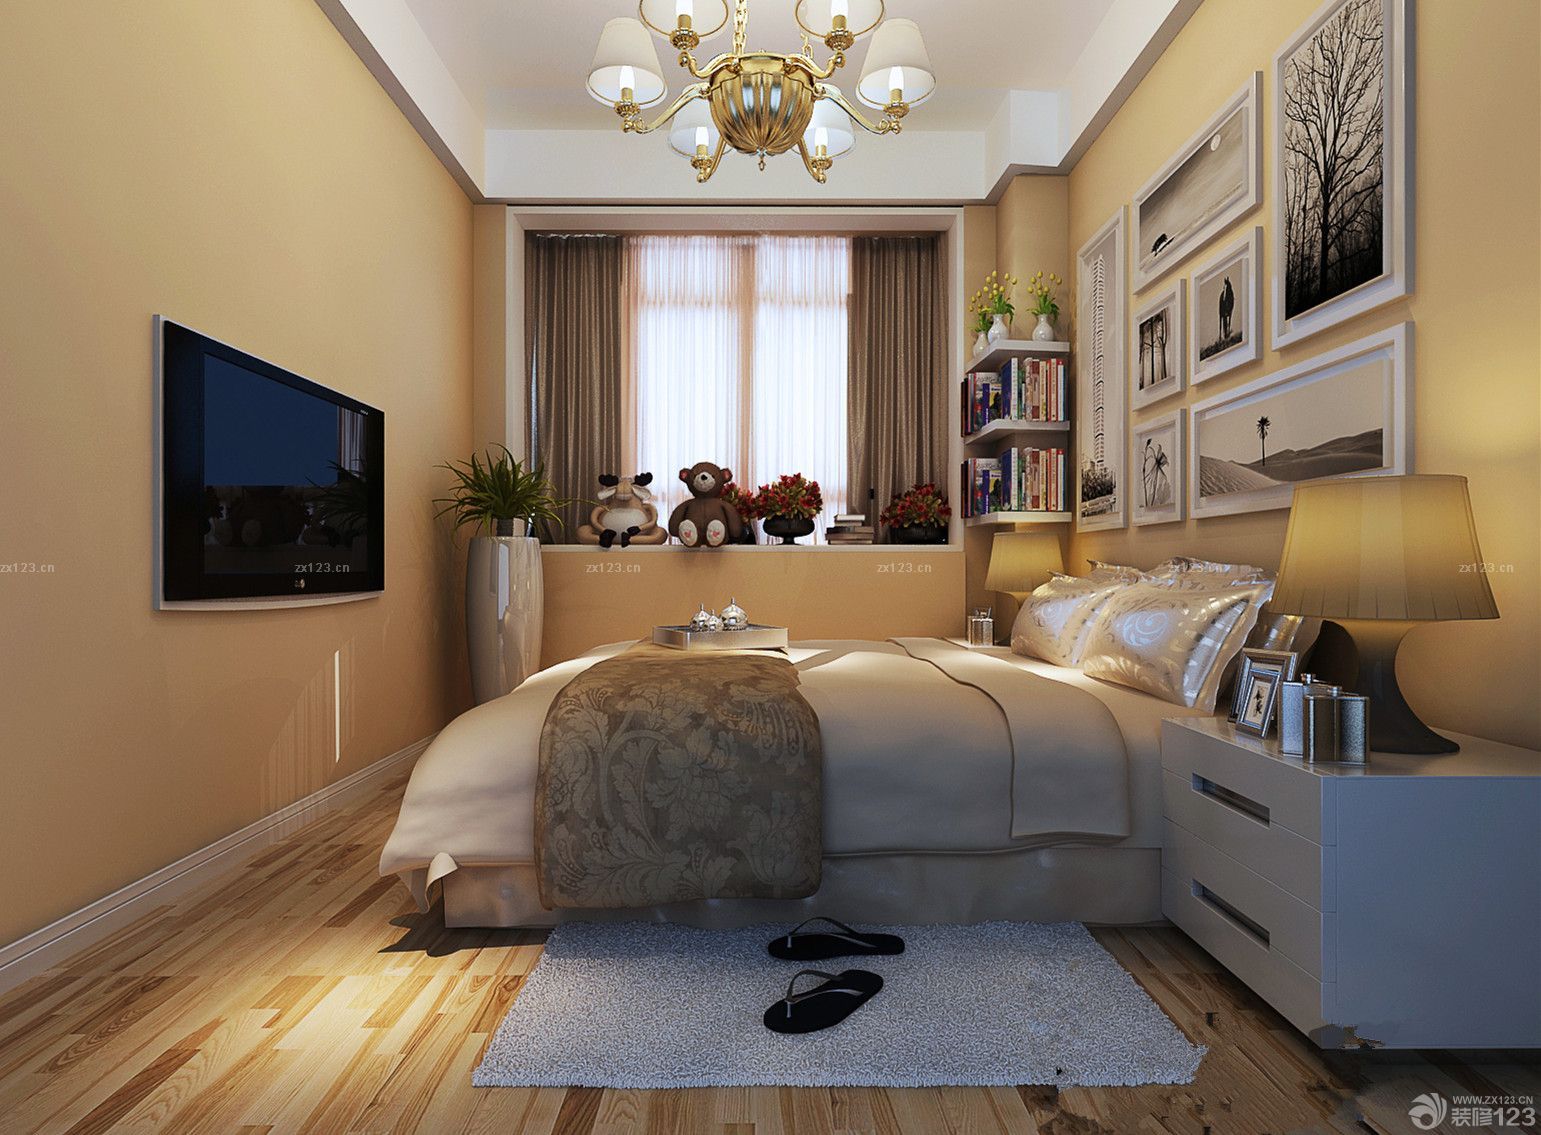 暖色调新房十平米小卧室飘窗装修效果图大全2014图片图片